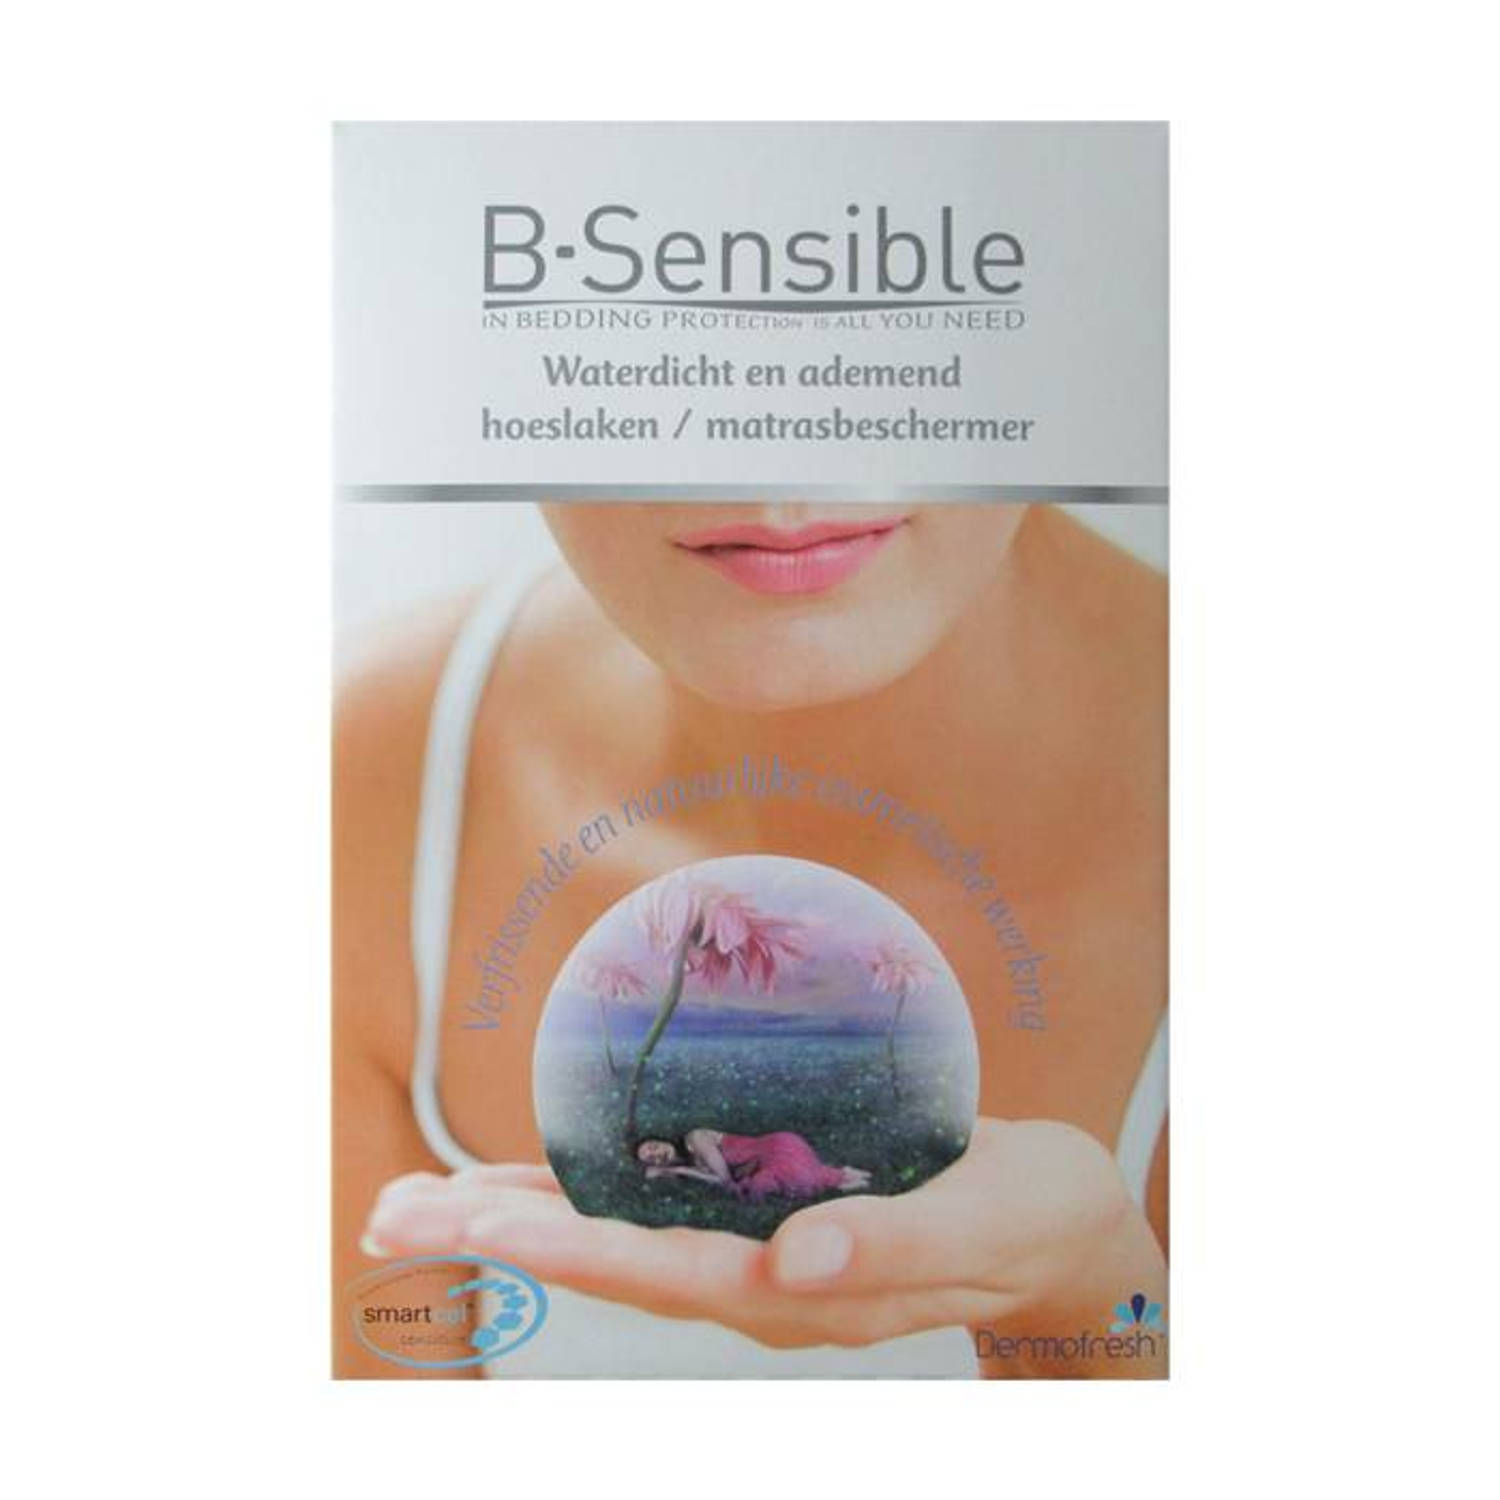 B-sensible 2 In 1 Waterdicht & Ademend Hoeslaken + Matrasbeschermer - Wit - 90x200